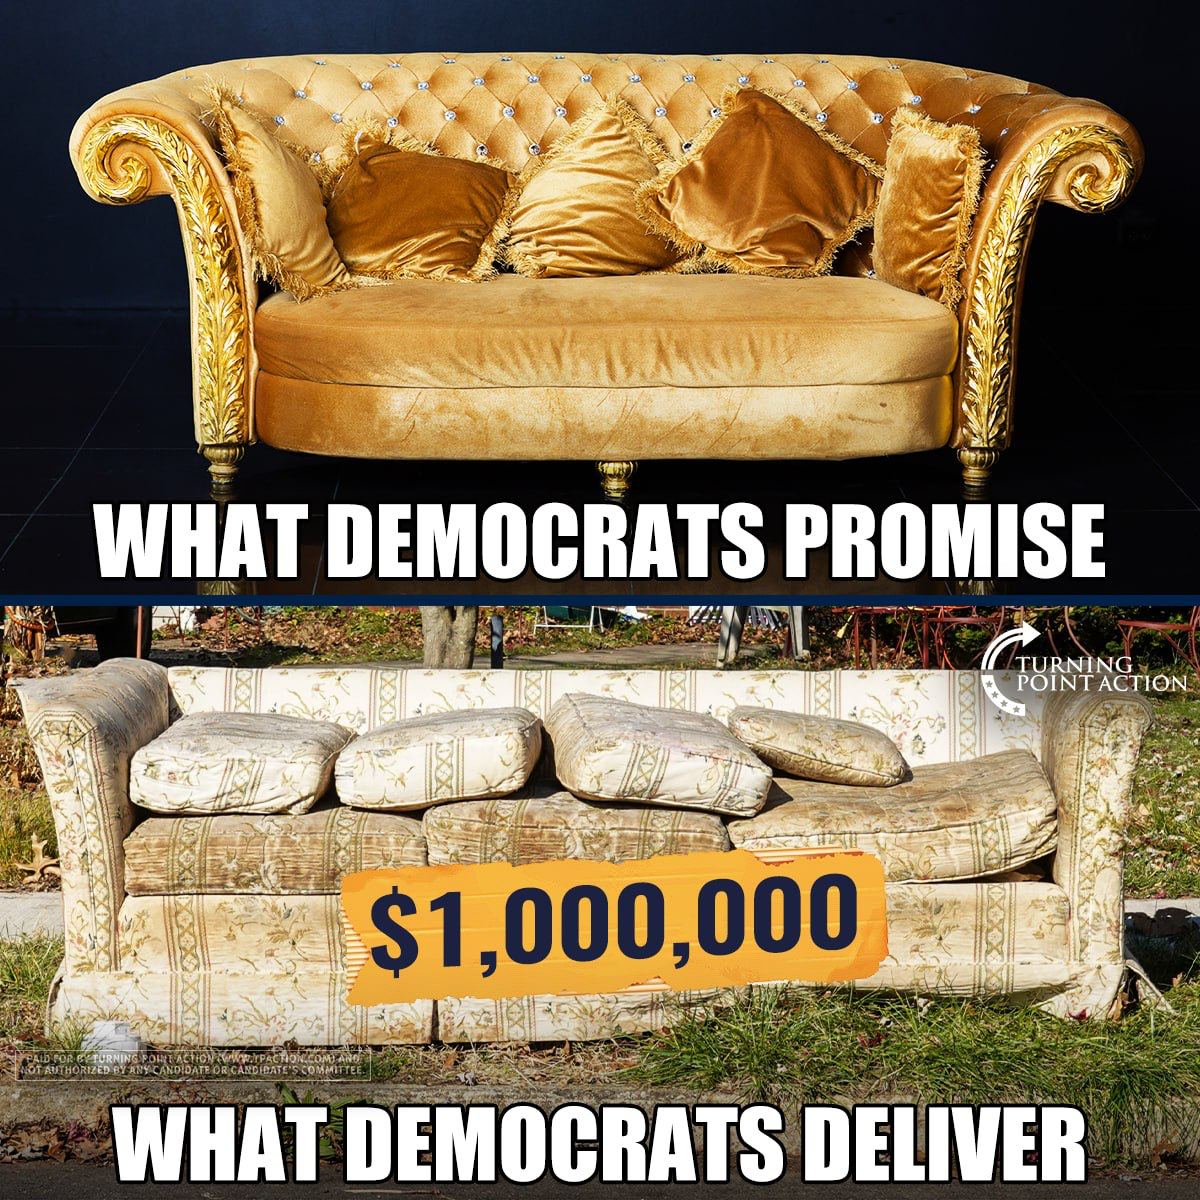 Democrat promises are ALWAYS broken 😂